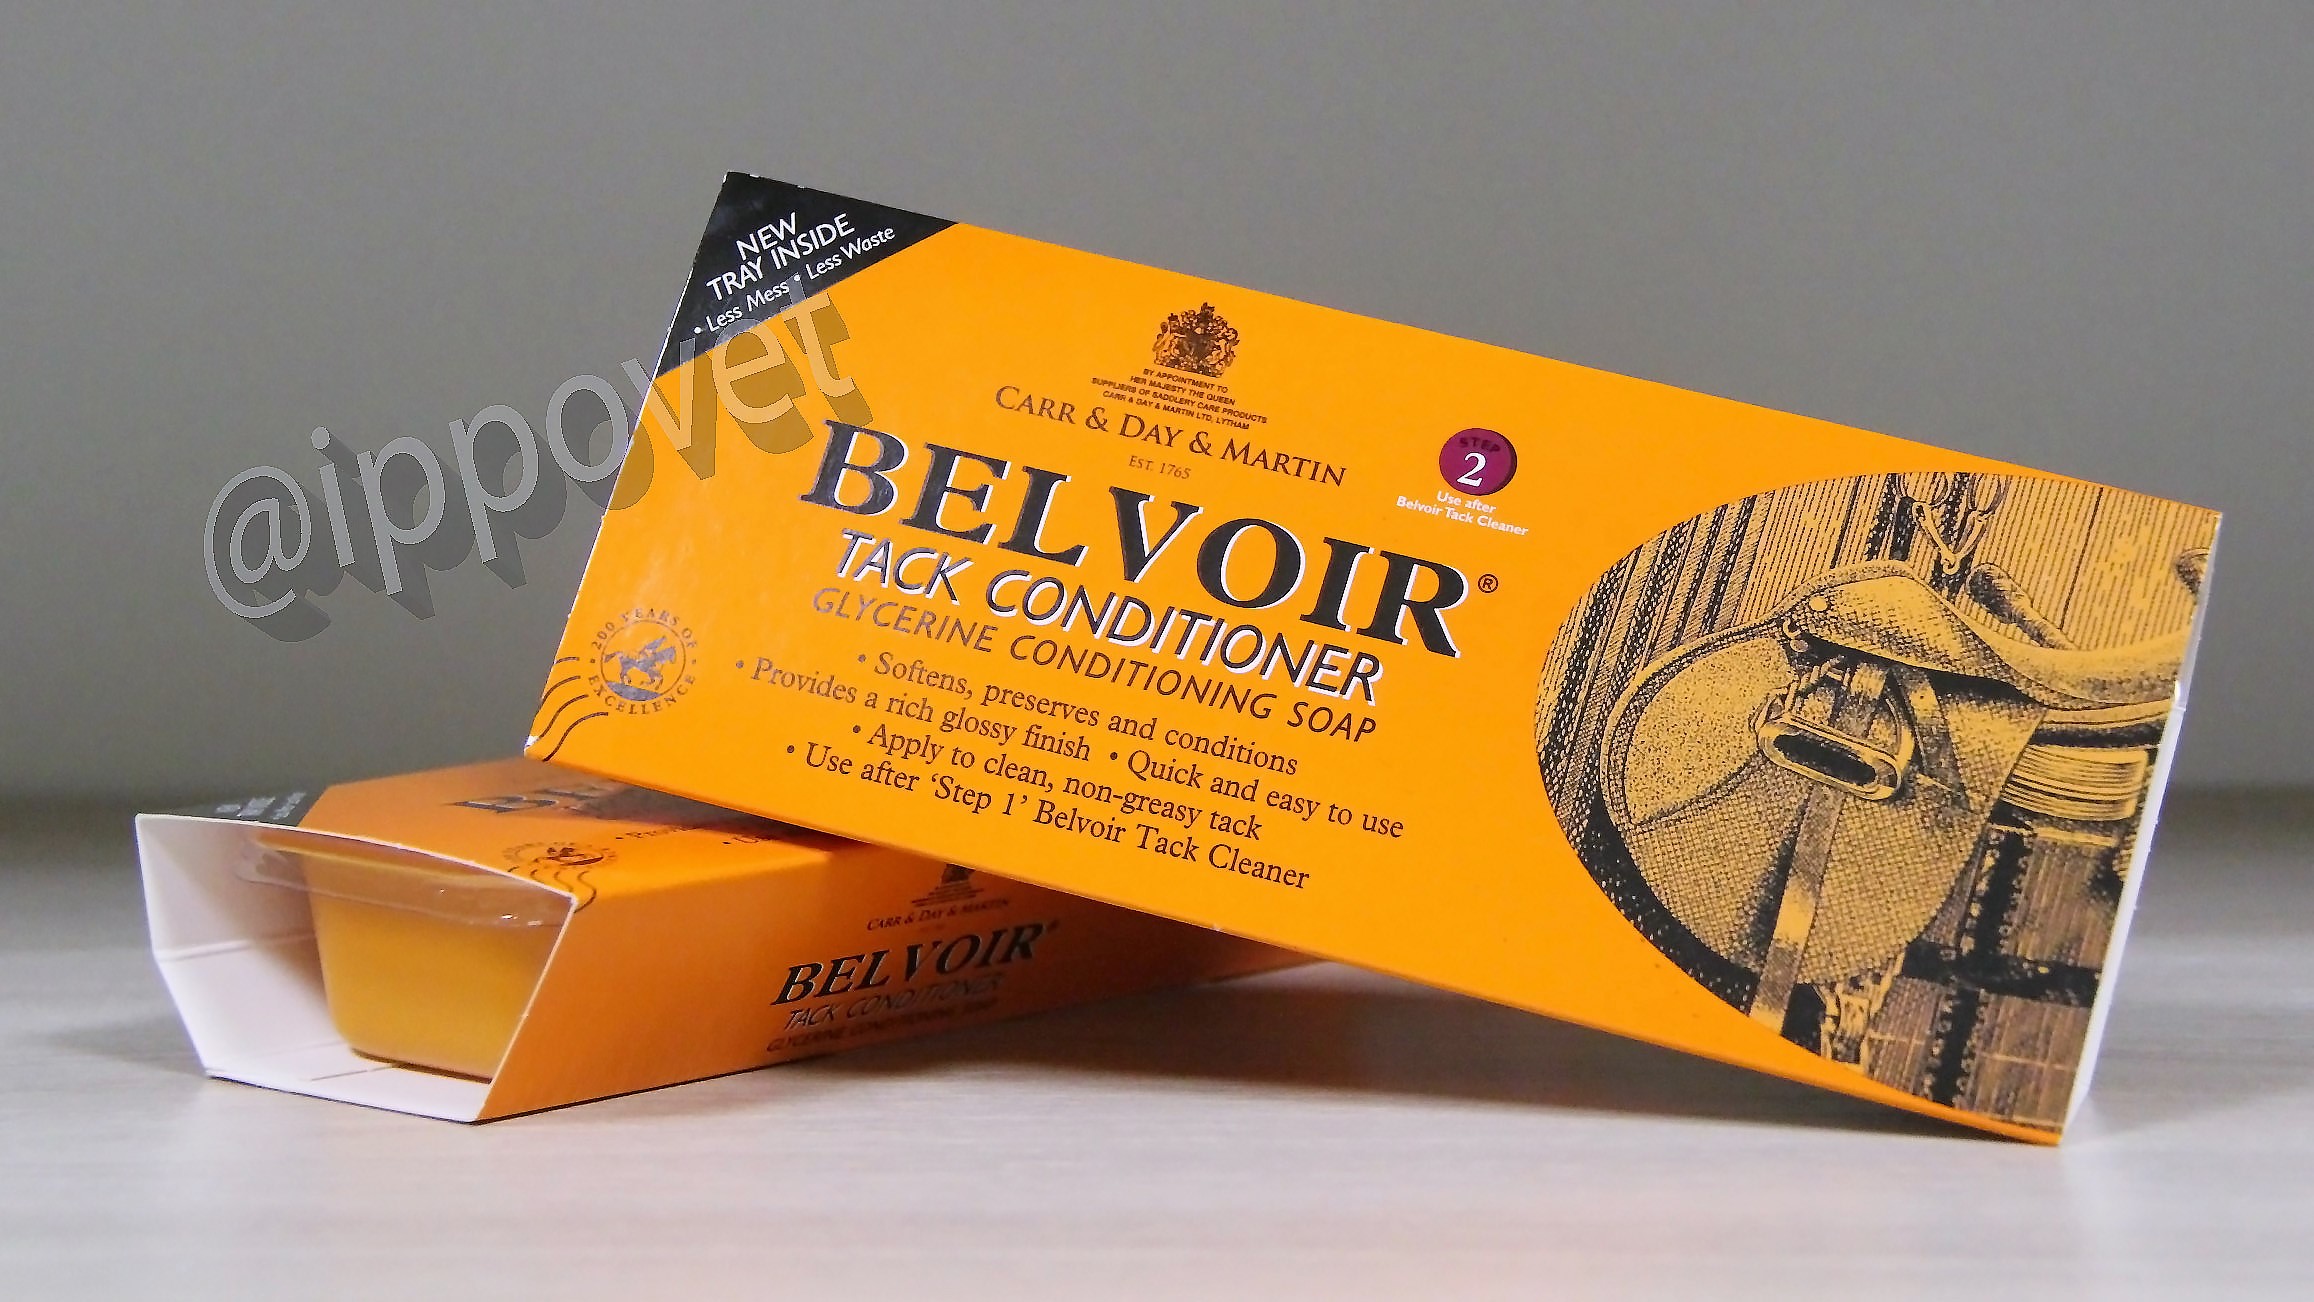 Традиционное мыло Belvoir Tack Conditioning Soap 250 г ветаптека  ИппоВет (IppoVet)